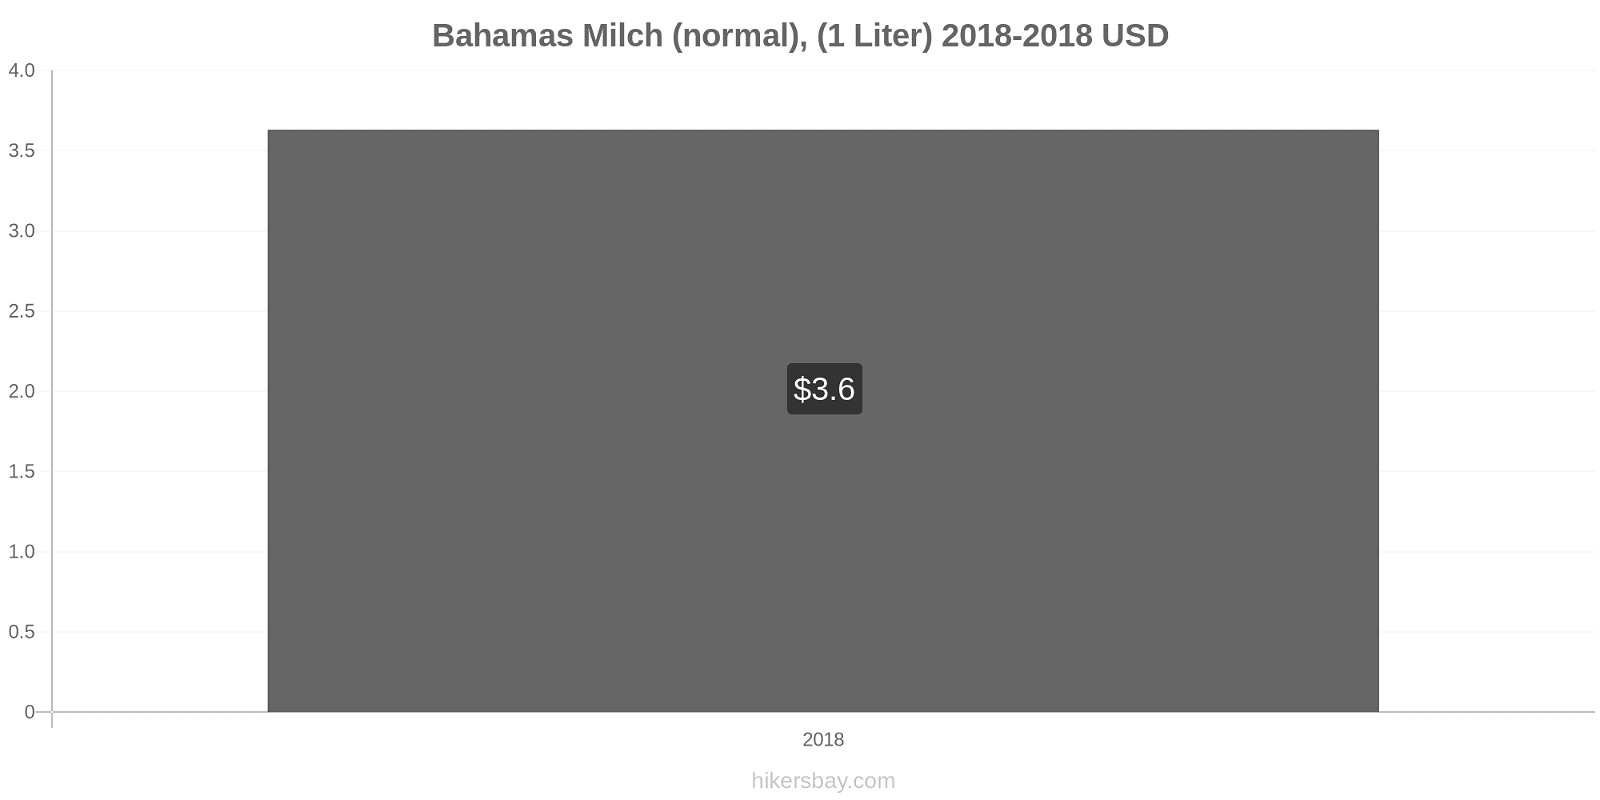 Bahamas Preisänderungen (Regulär), Milch (1 Liter) hikersbay.com